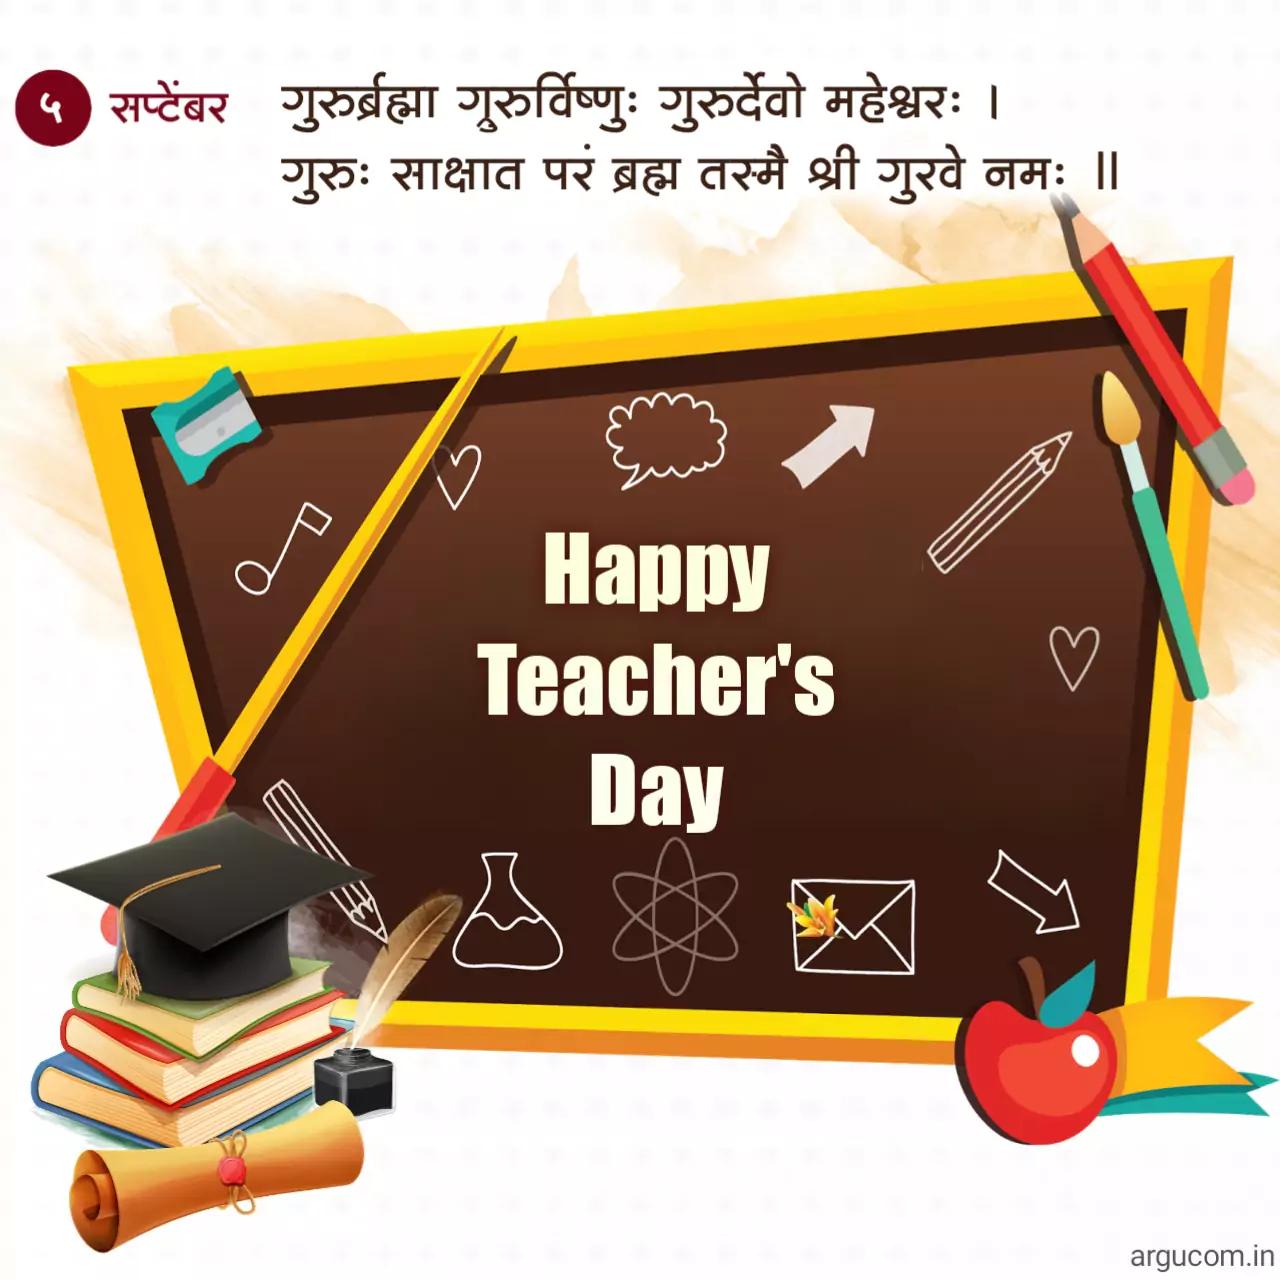 Teachers day quotes in hindi , टीचर डे कोट्स हिंदी